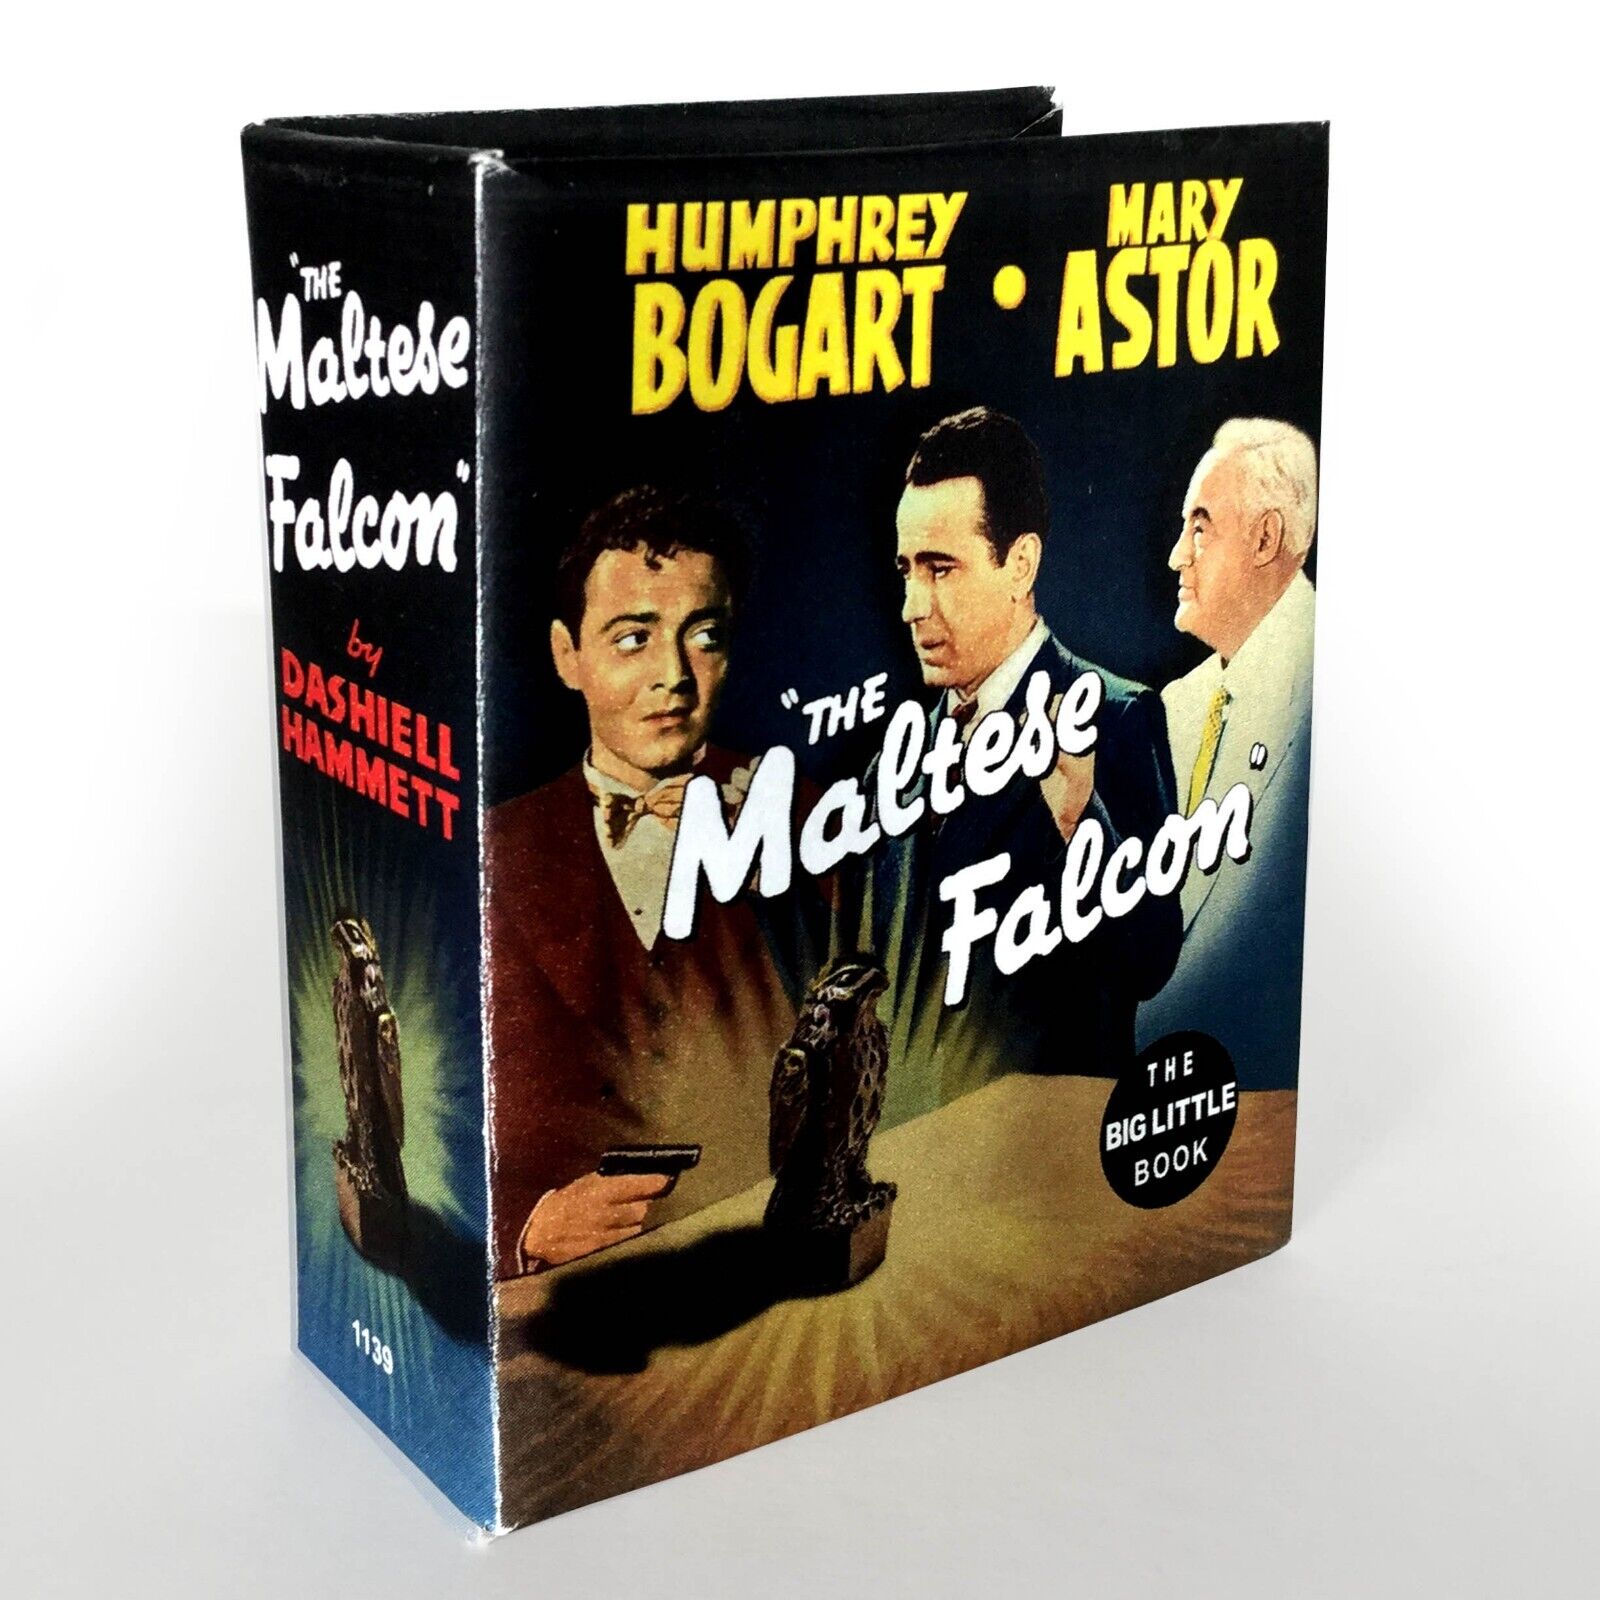 The Maltese Falcon - Fantasy Cover Big Little Book - *Read